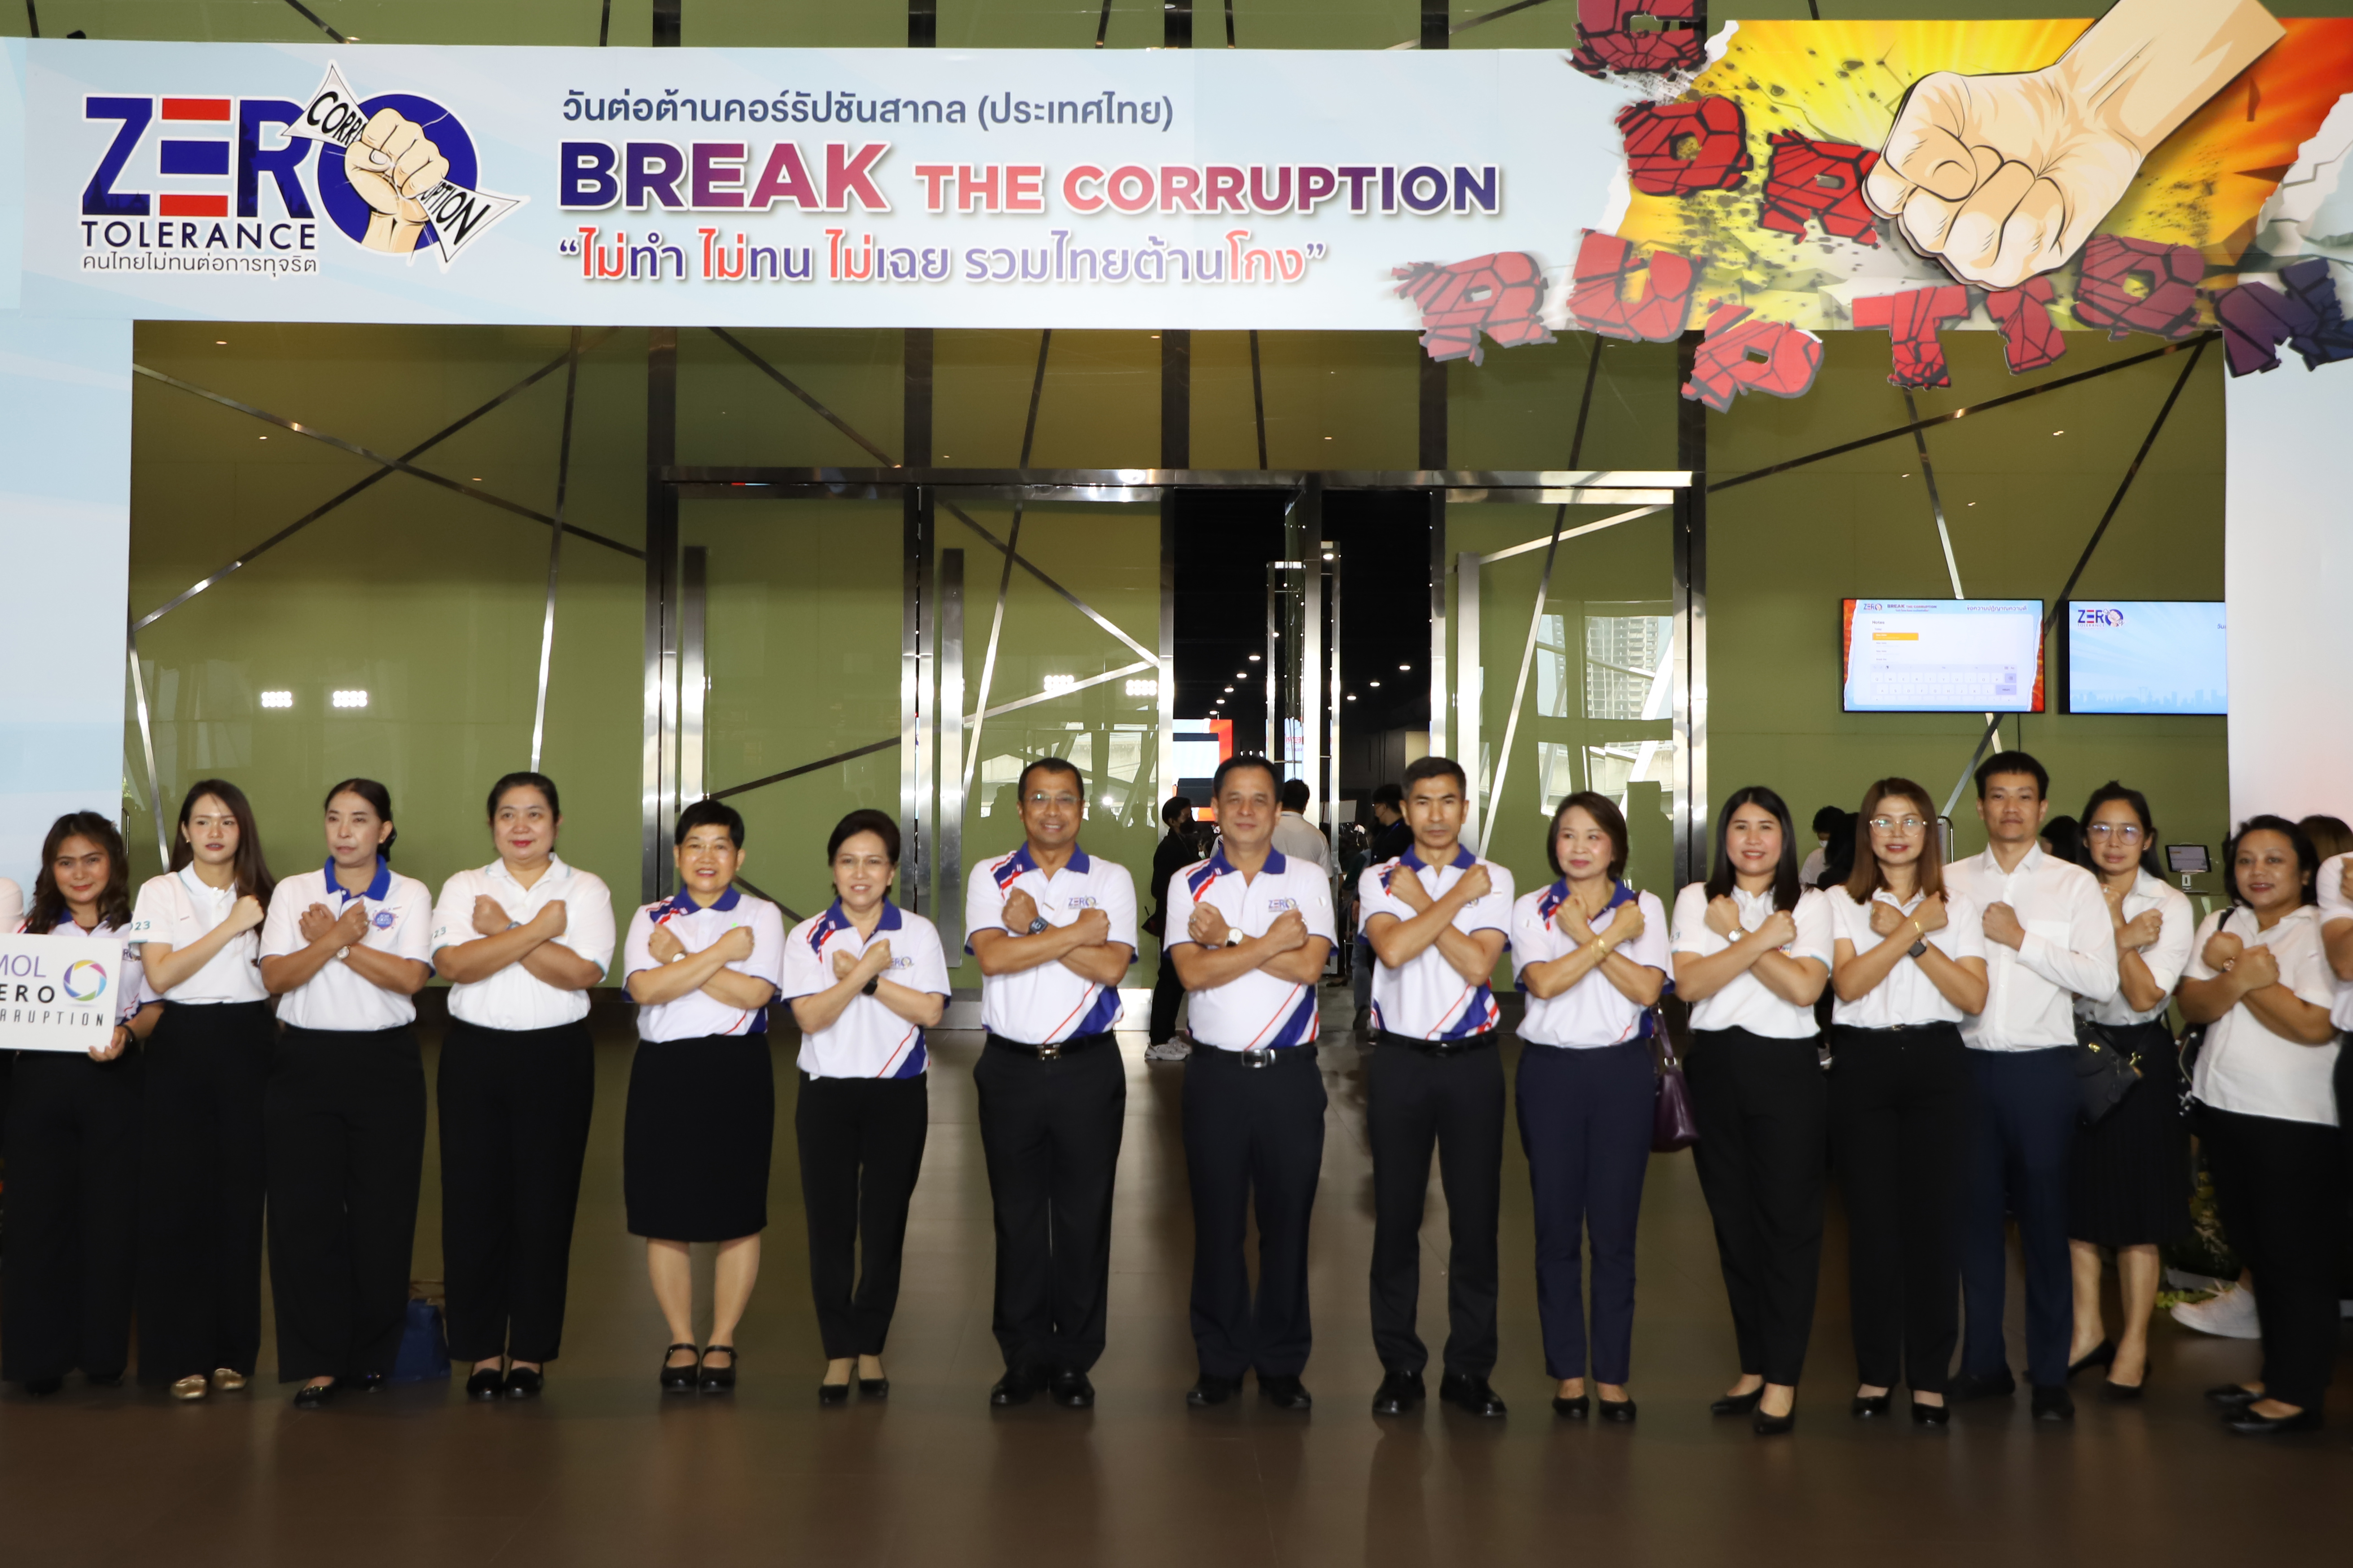 ก.แรงงาน ร่วมงานวันต่อต้านคอร์รัปชันสากล (ประเทศไทย) ภายใต้แนวคิด “Zero Tolerance คนไทยไม่ทนต่อการทจริต”